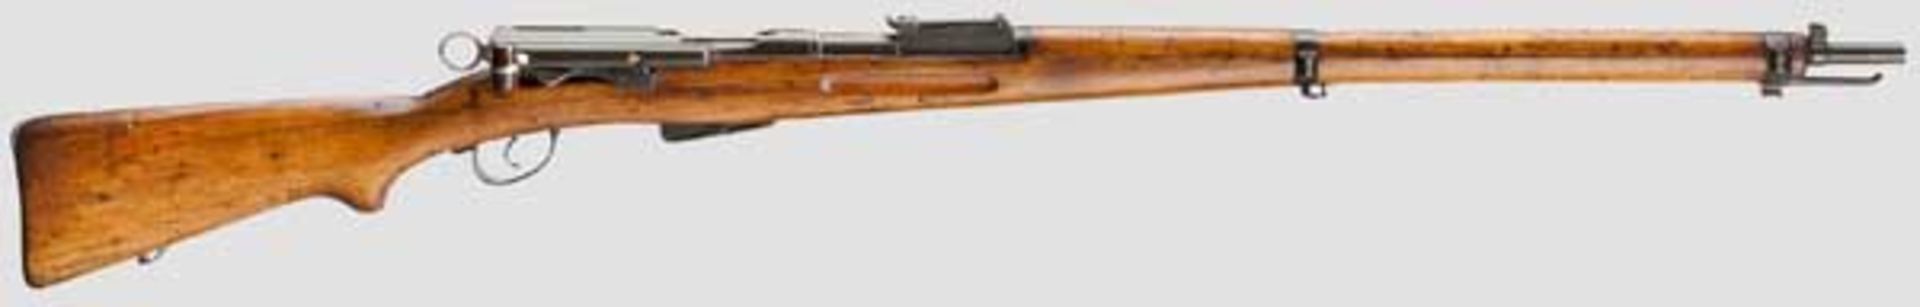 Infanteriegewehr M 1911 Kal. 7,5 x 55, Nr. 469621. Nummerngleich. Lauf eingefettet. Sechsschüssig.